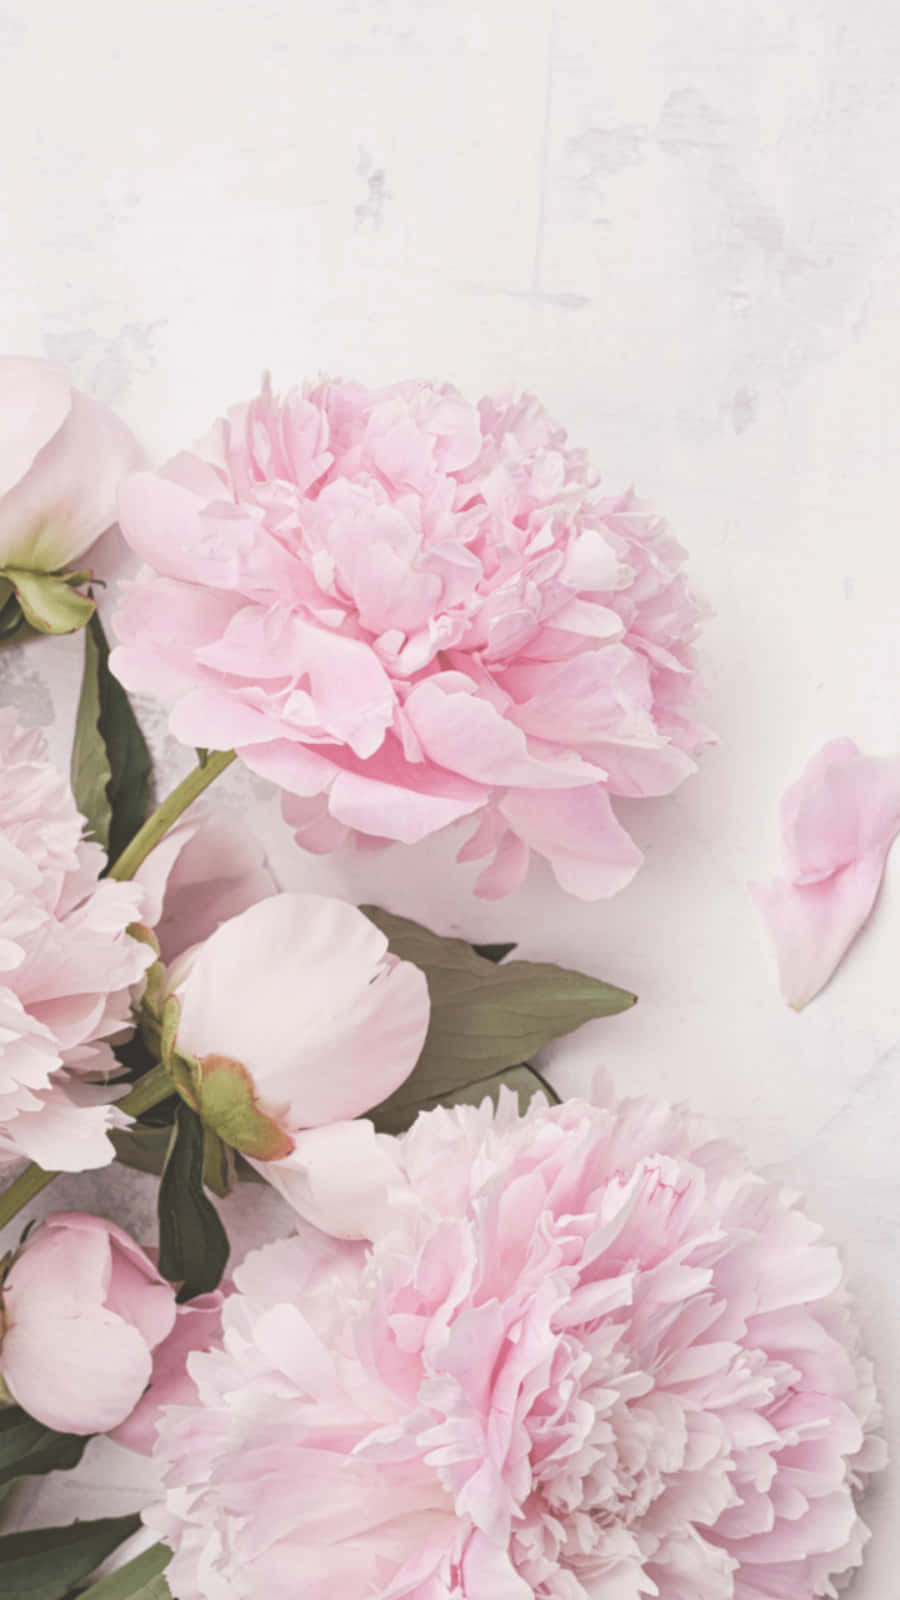 Affascinanteesposizione Floreale Di Peonia Rosa Chiaro Per Iphone. Sfondo